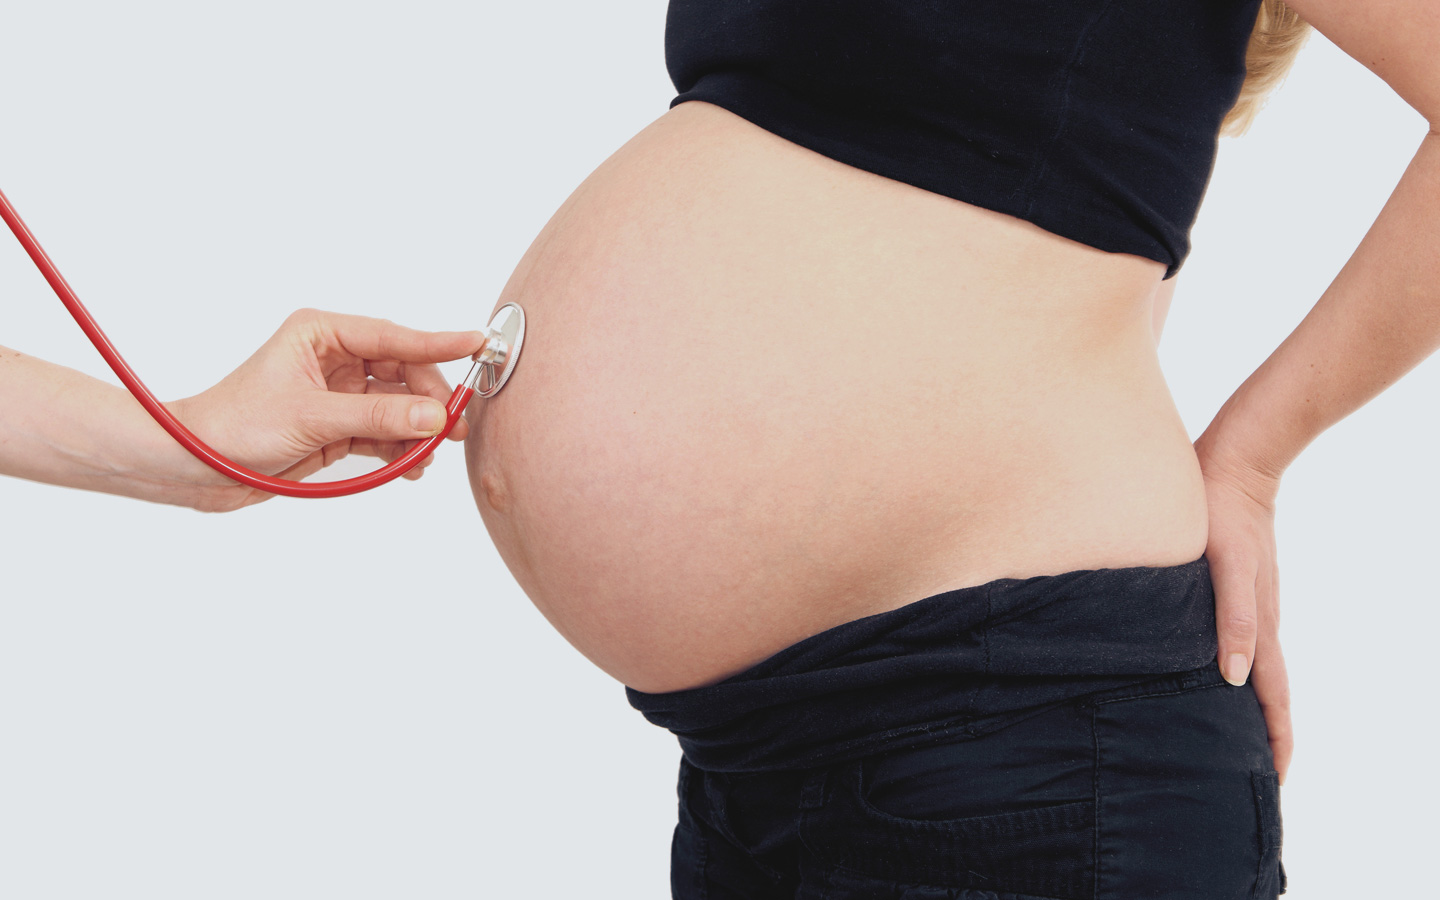 Foto: Bauch von Schwangerer wird mit Stethoskop abgehorcht.